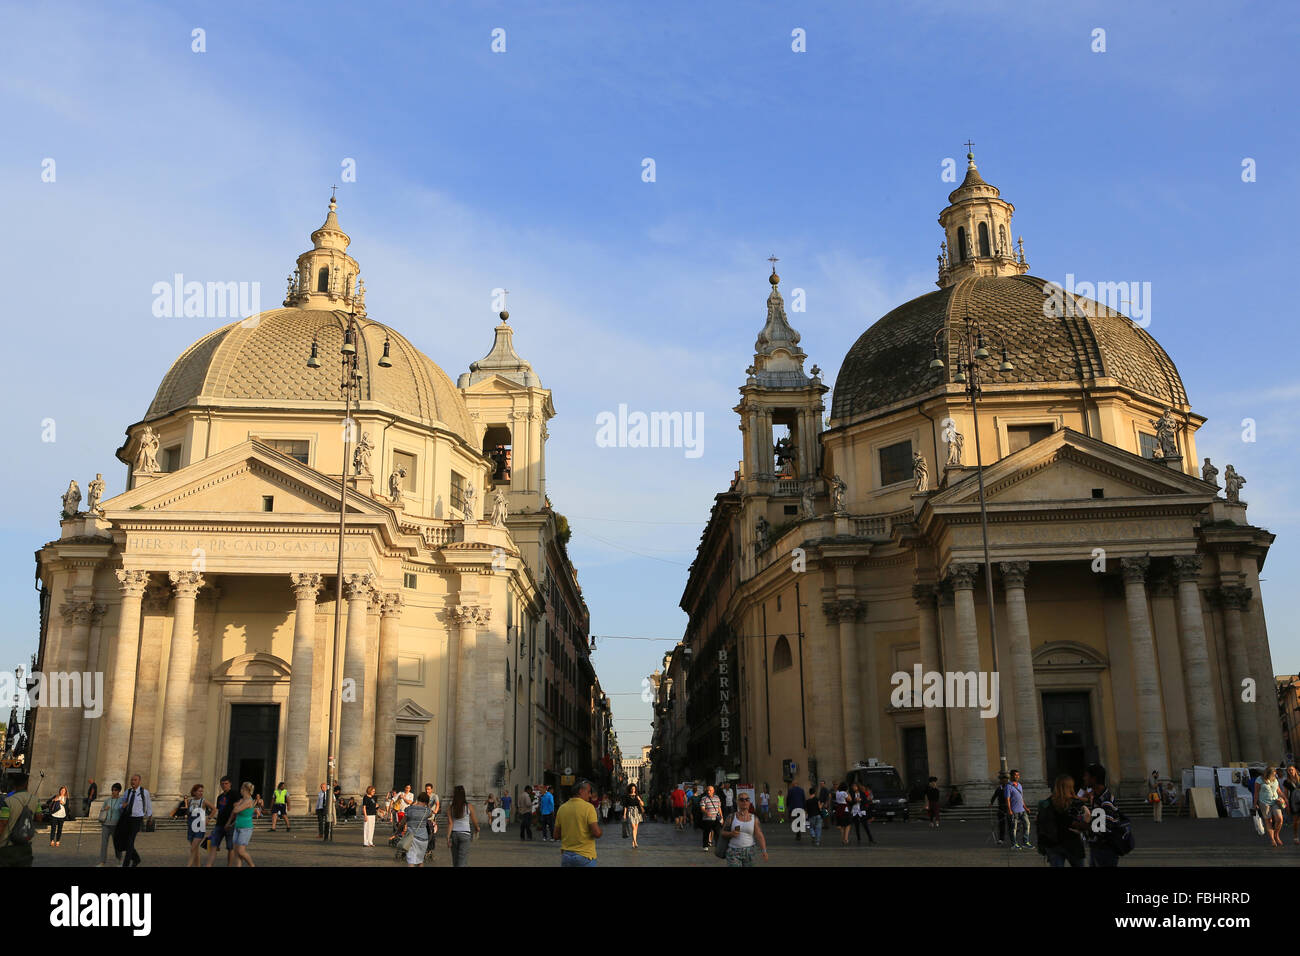 Les églises de Santa Maria, la Piazza del Popolo, Rome, Italie. Banque D'Images